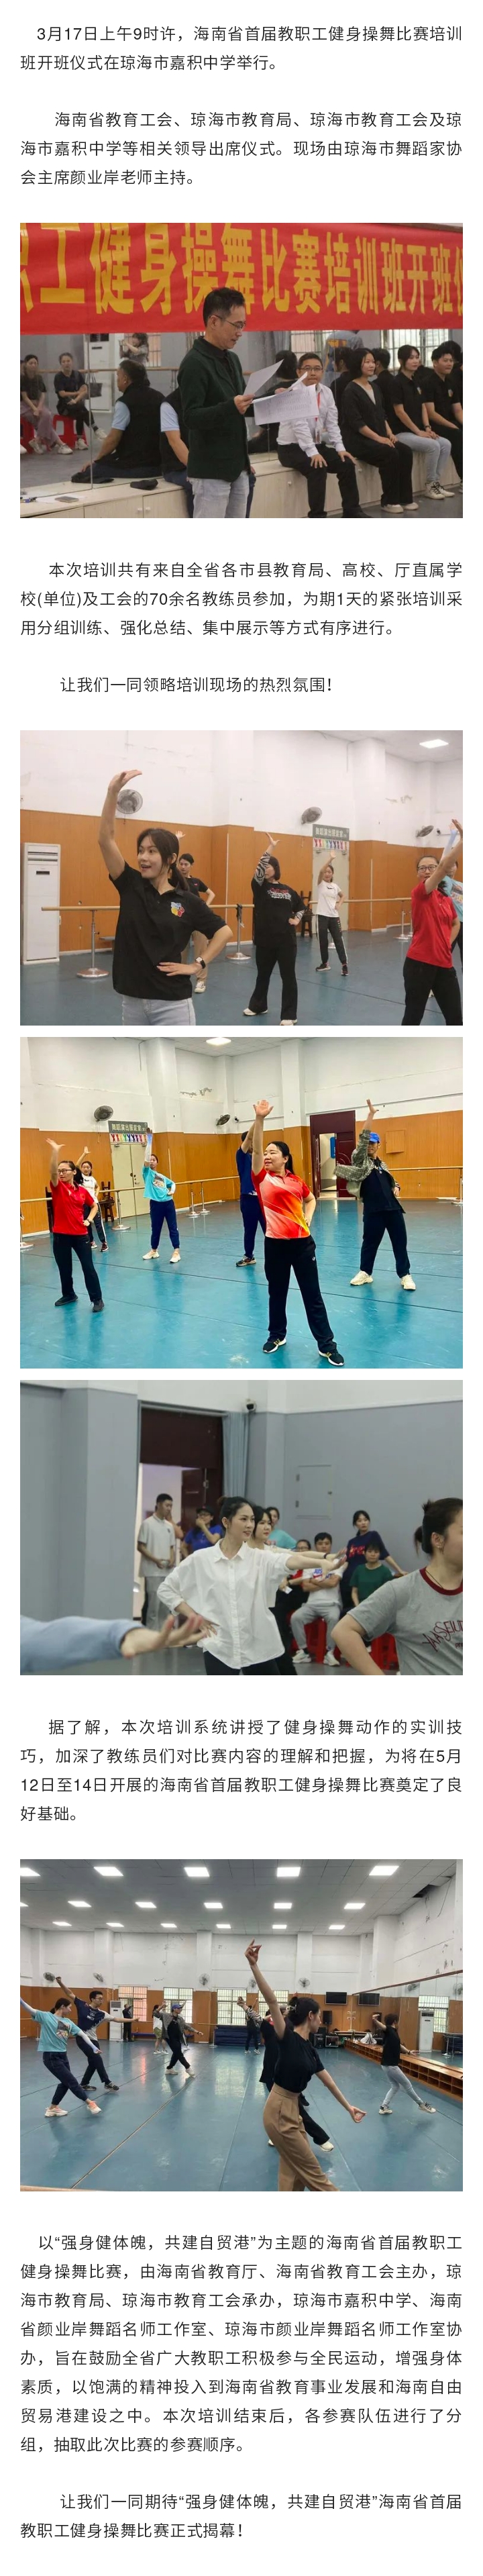 海南省首届教职工健身操舞比赛培训班开班